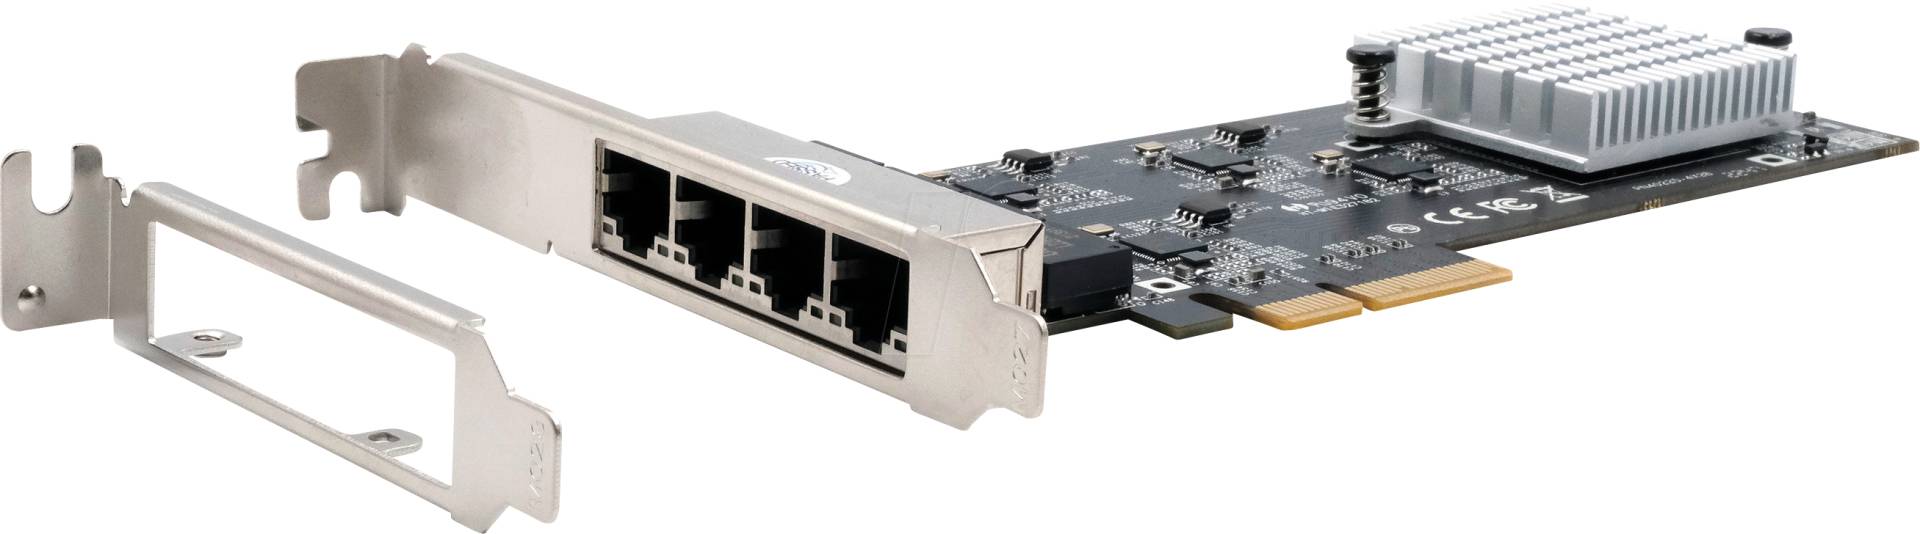 EXSYS EX-60115 - Netzwerkkarte, PCI-Express, 2,5 Gigabit Ethernet, 4x RJ45 von EXSYS